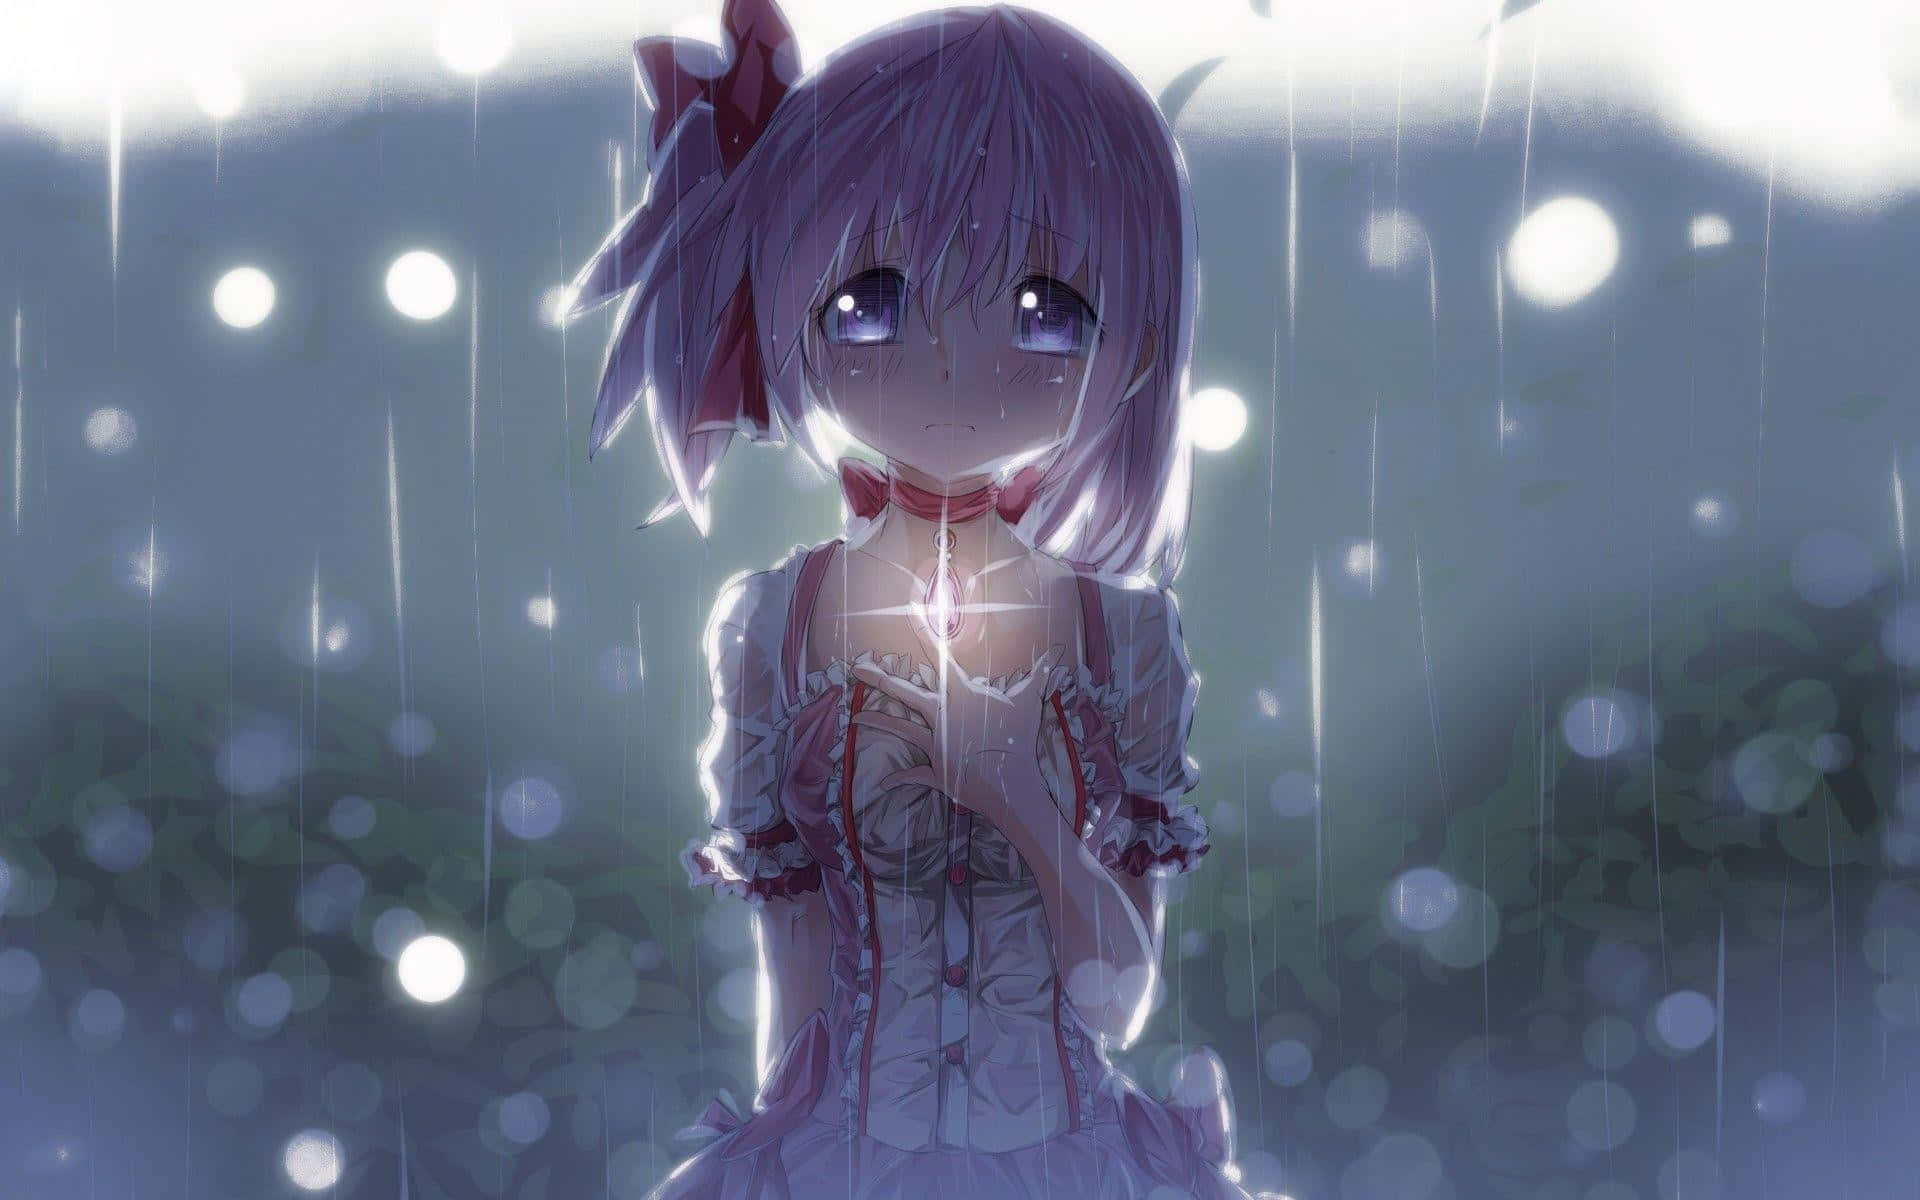 sad girl crying alone in rain